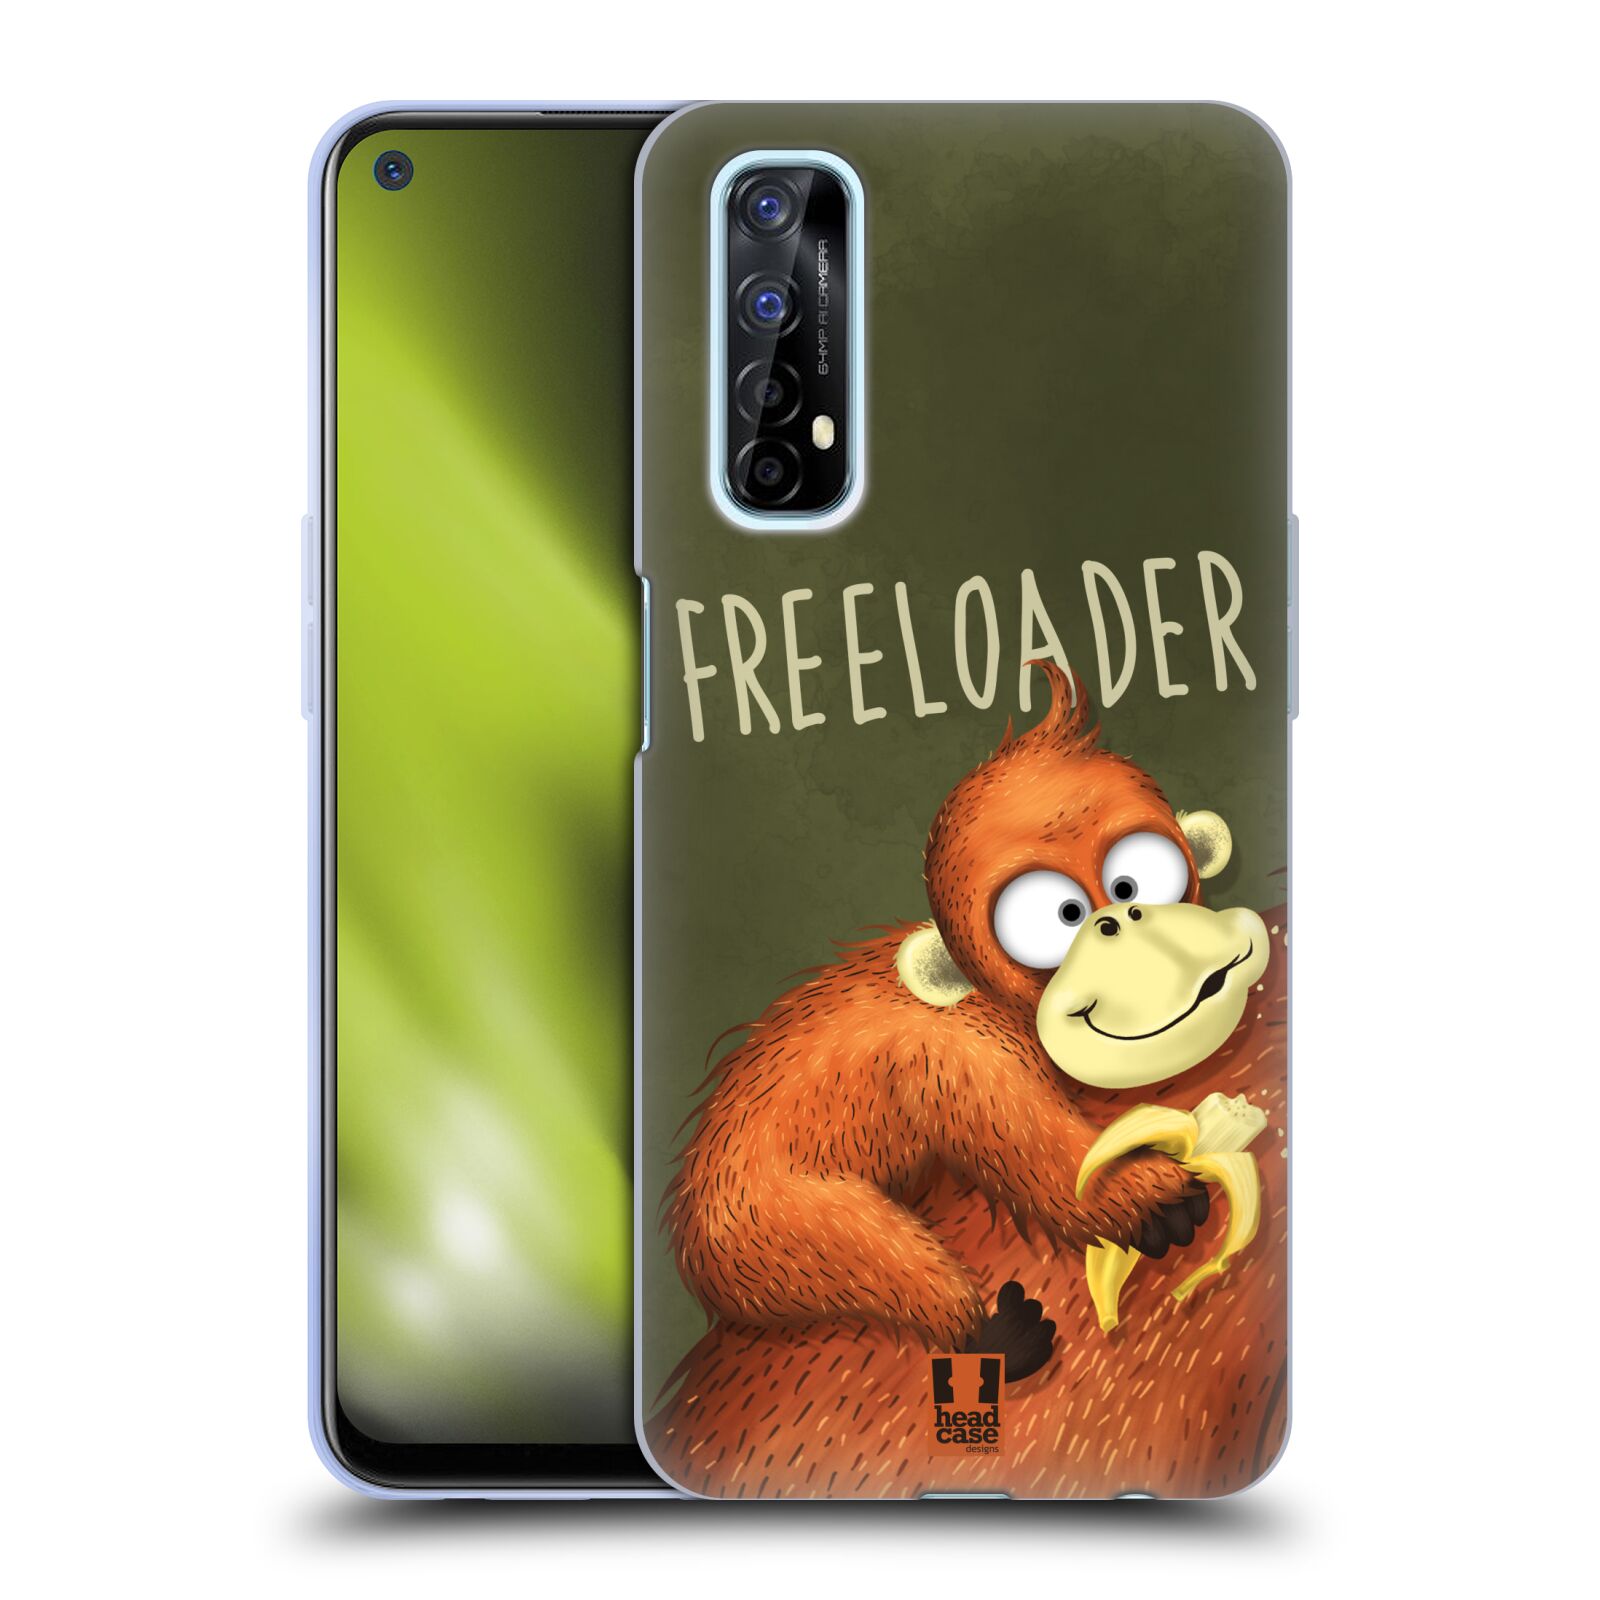 Silikonové pouzdro na mobil Realme 7 - Head Case - Opičák Freeloader